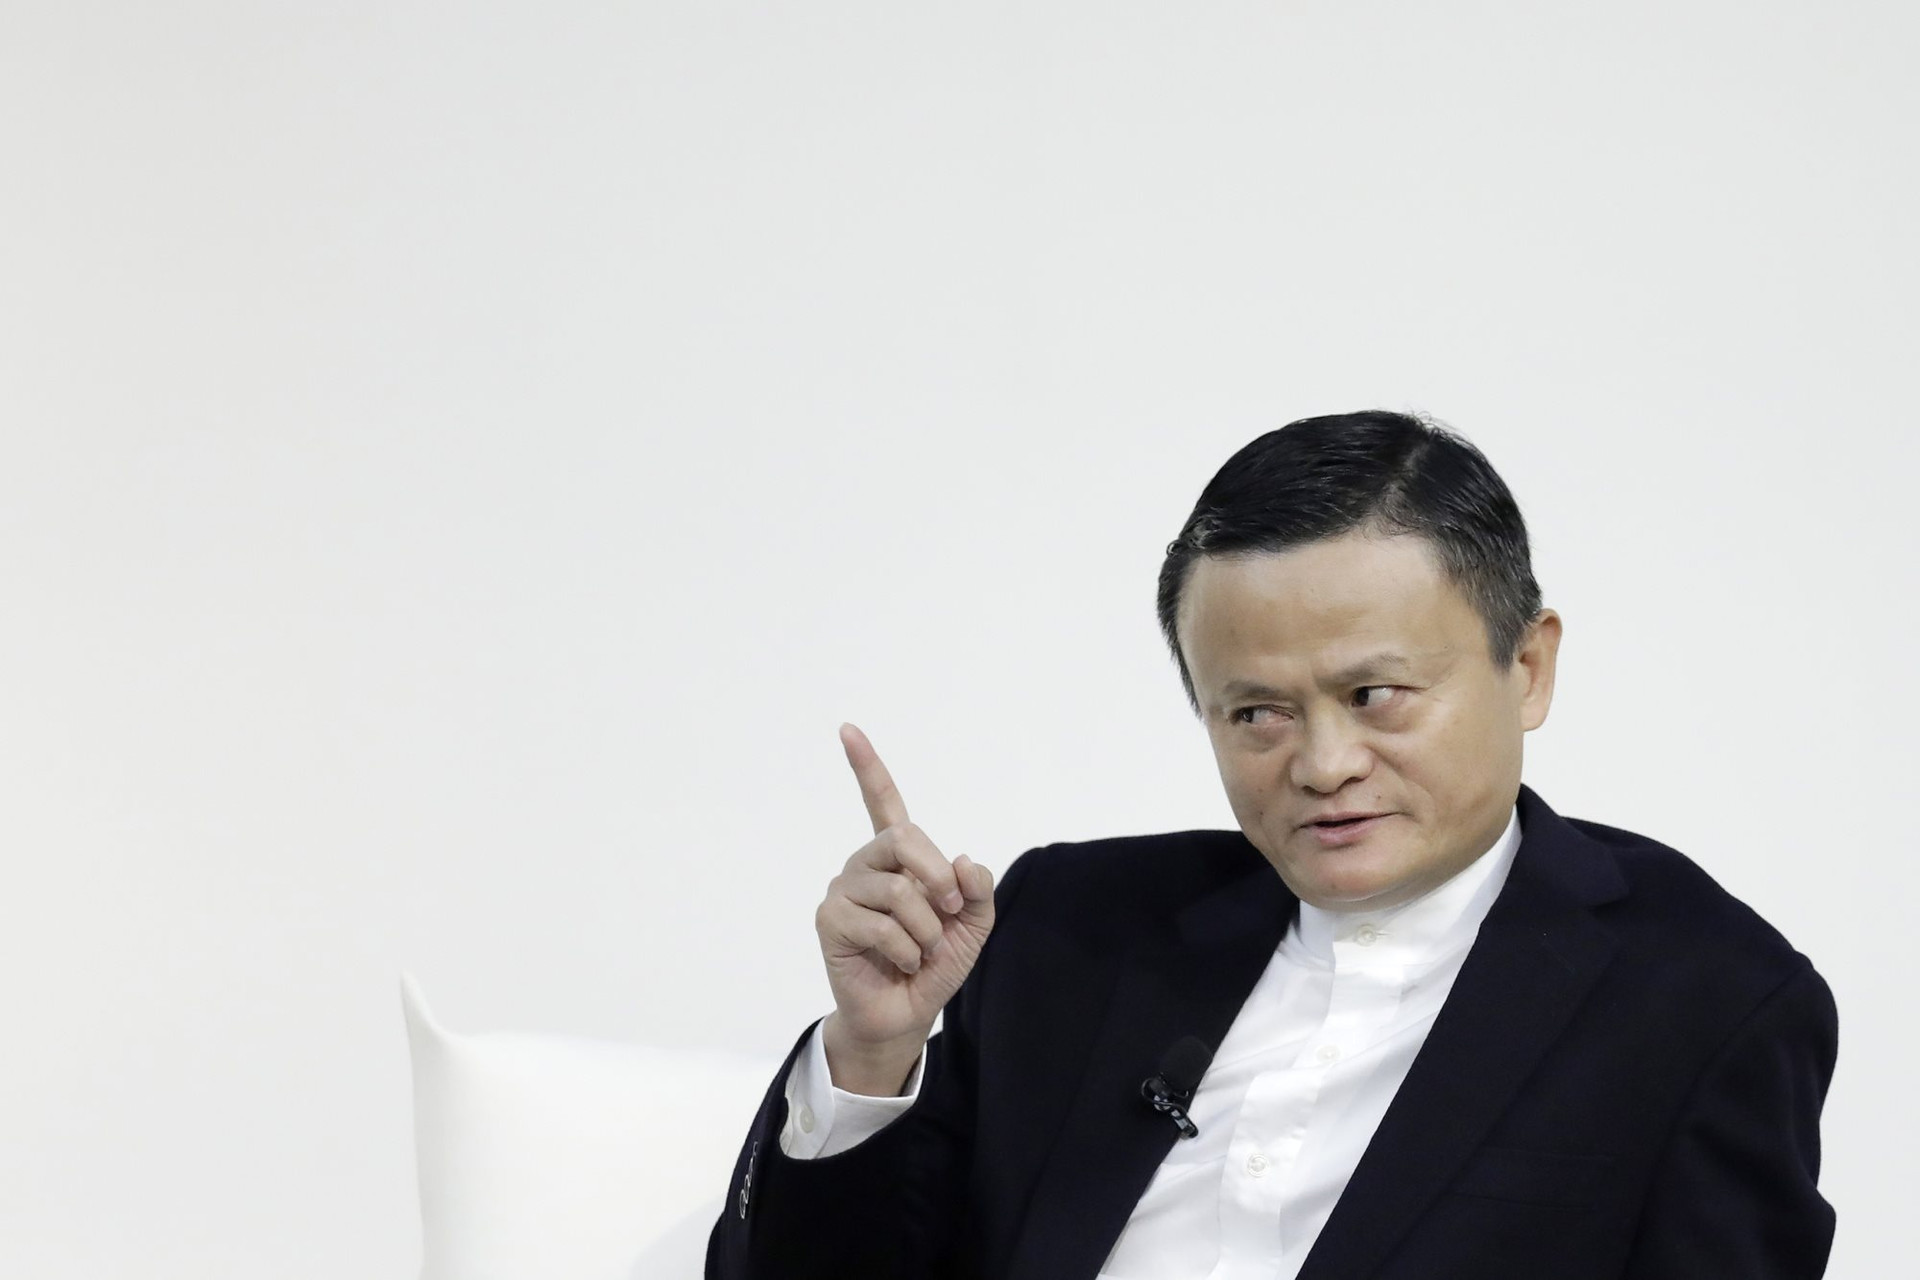 Nóng: Jack Ma chính thức từ bỏ Alibaba, chấm dứt sự nghiệp, bỏ sang nước ngoài làm giáo sư đại học, chuyên giảng về nông nghiệp? - Ảnh 1.